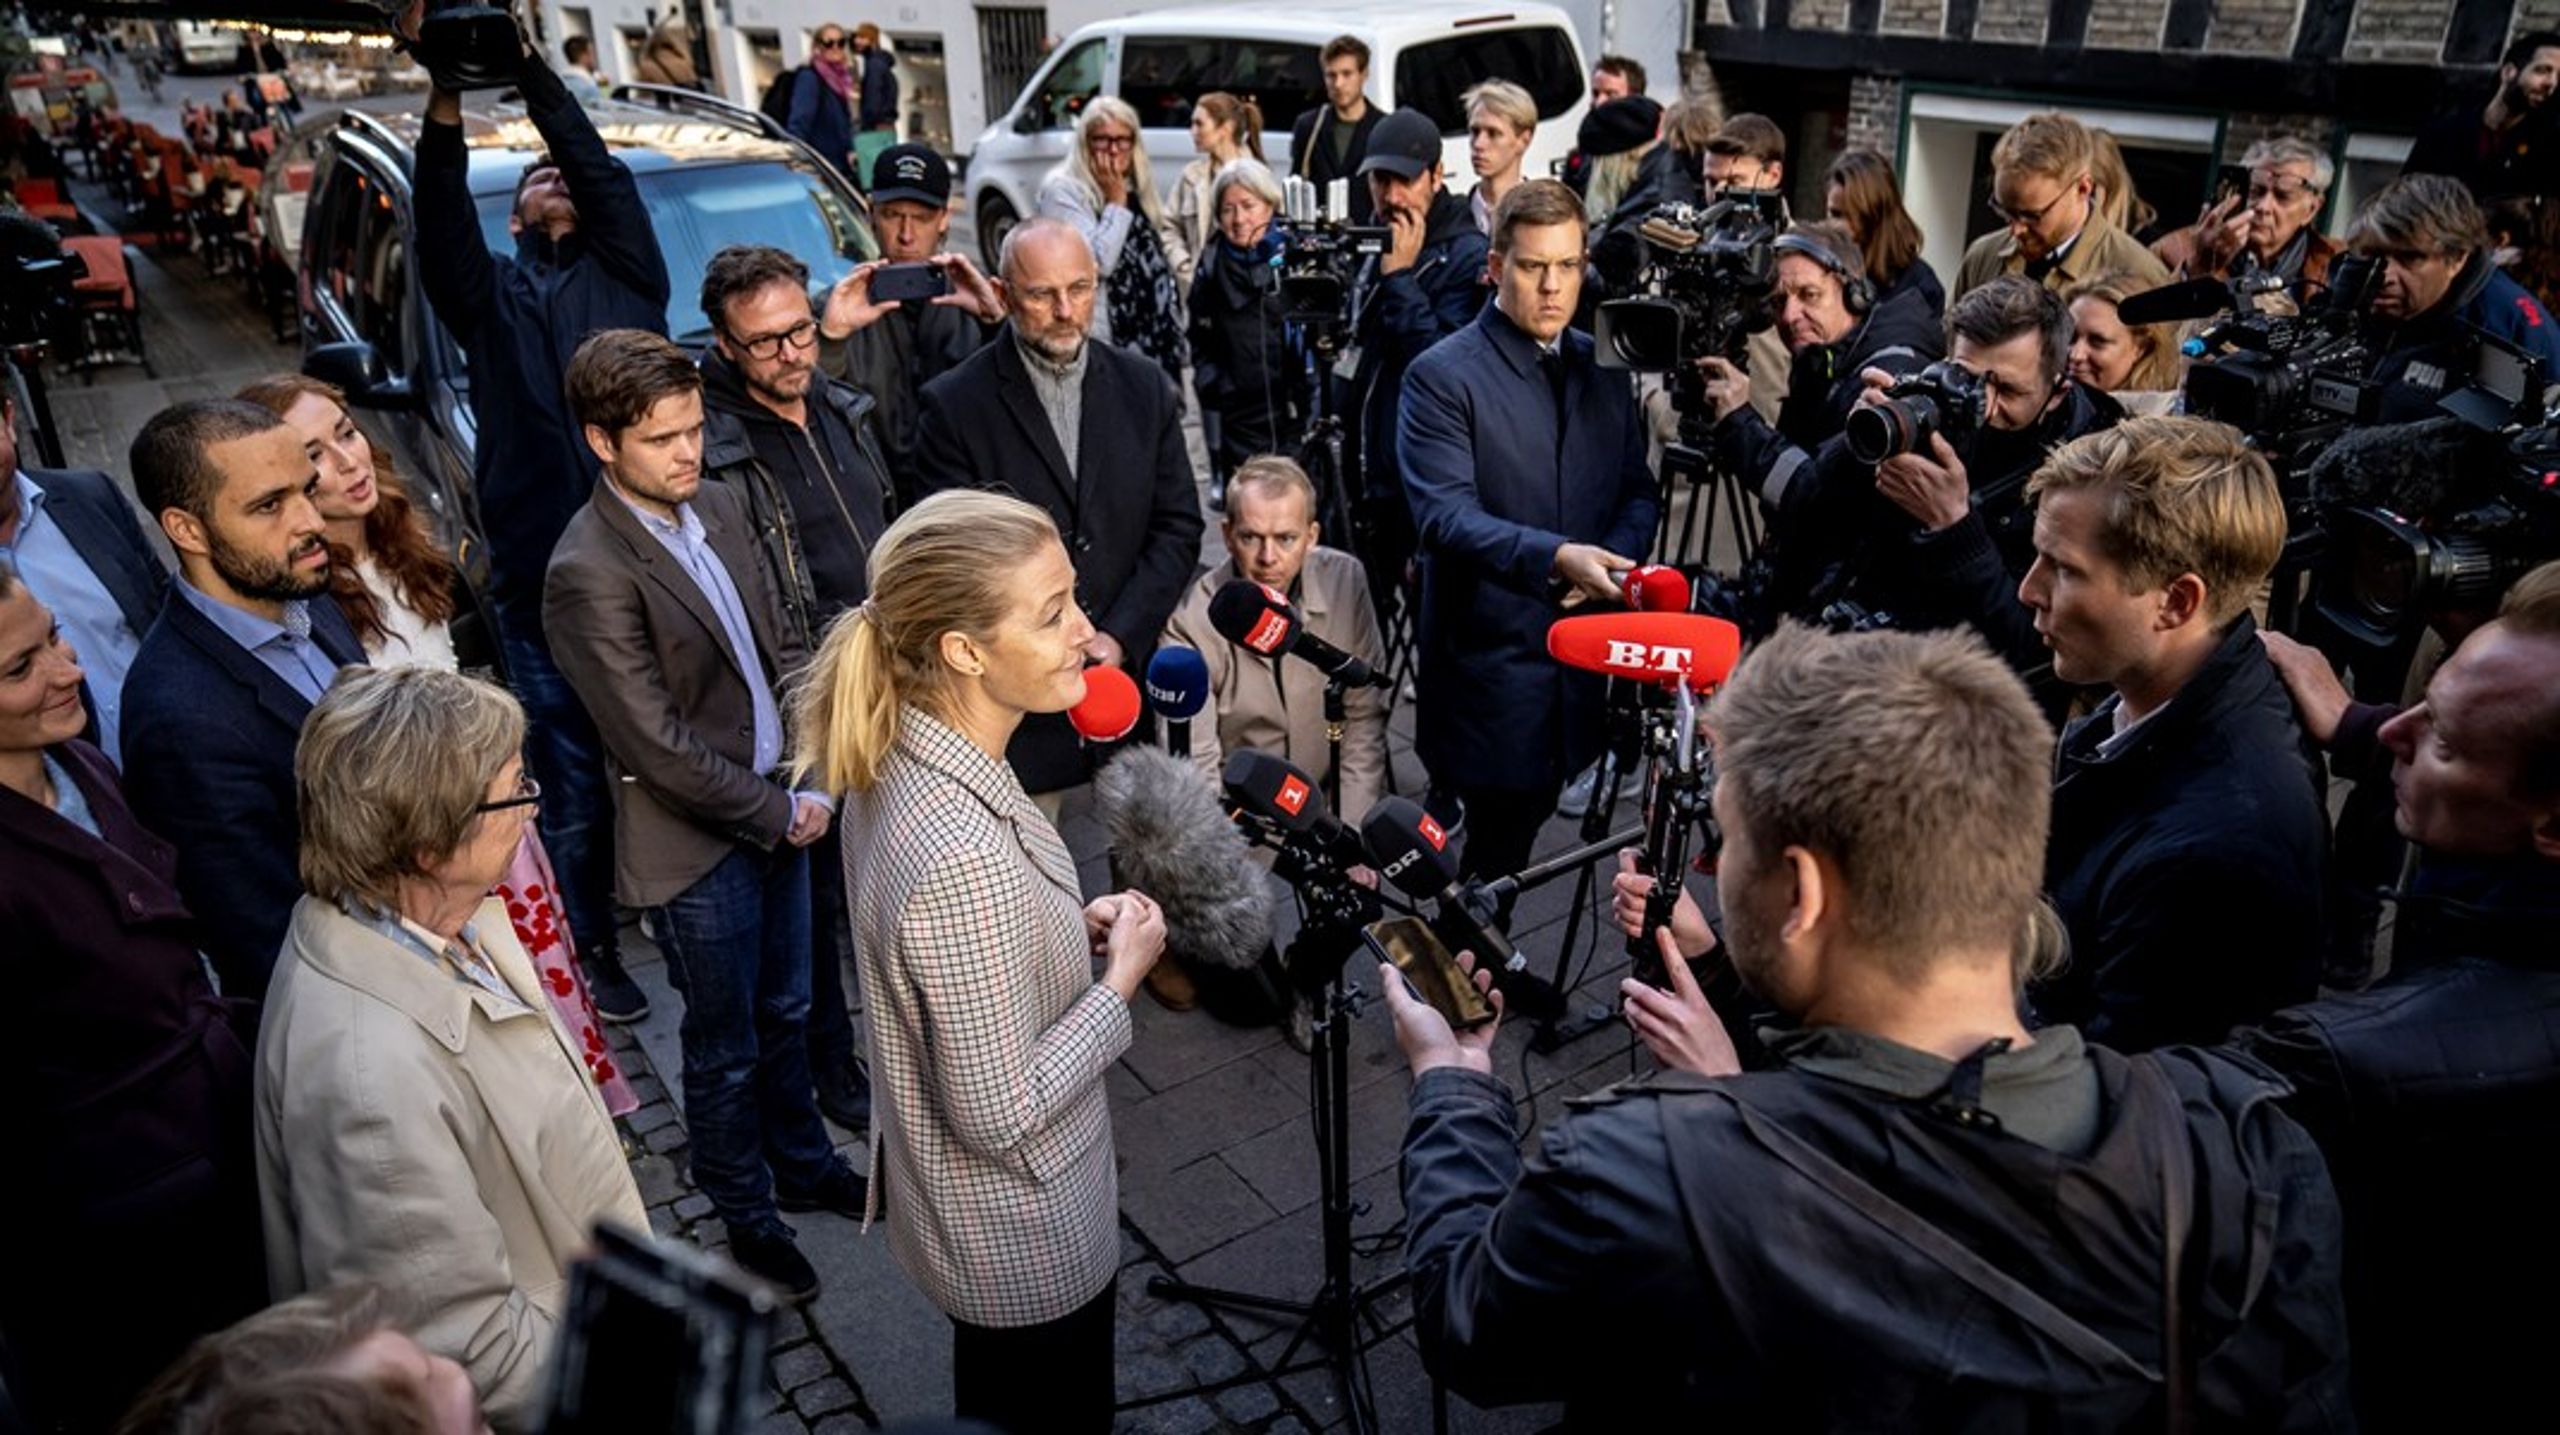 Medier og politiker forstærker et politisk miljø, hvor alt skal gå hurtigt, skriver Jacob Torfing og Eva Sørensen.